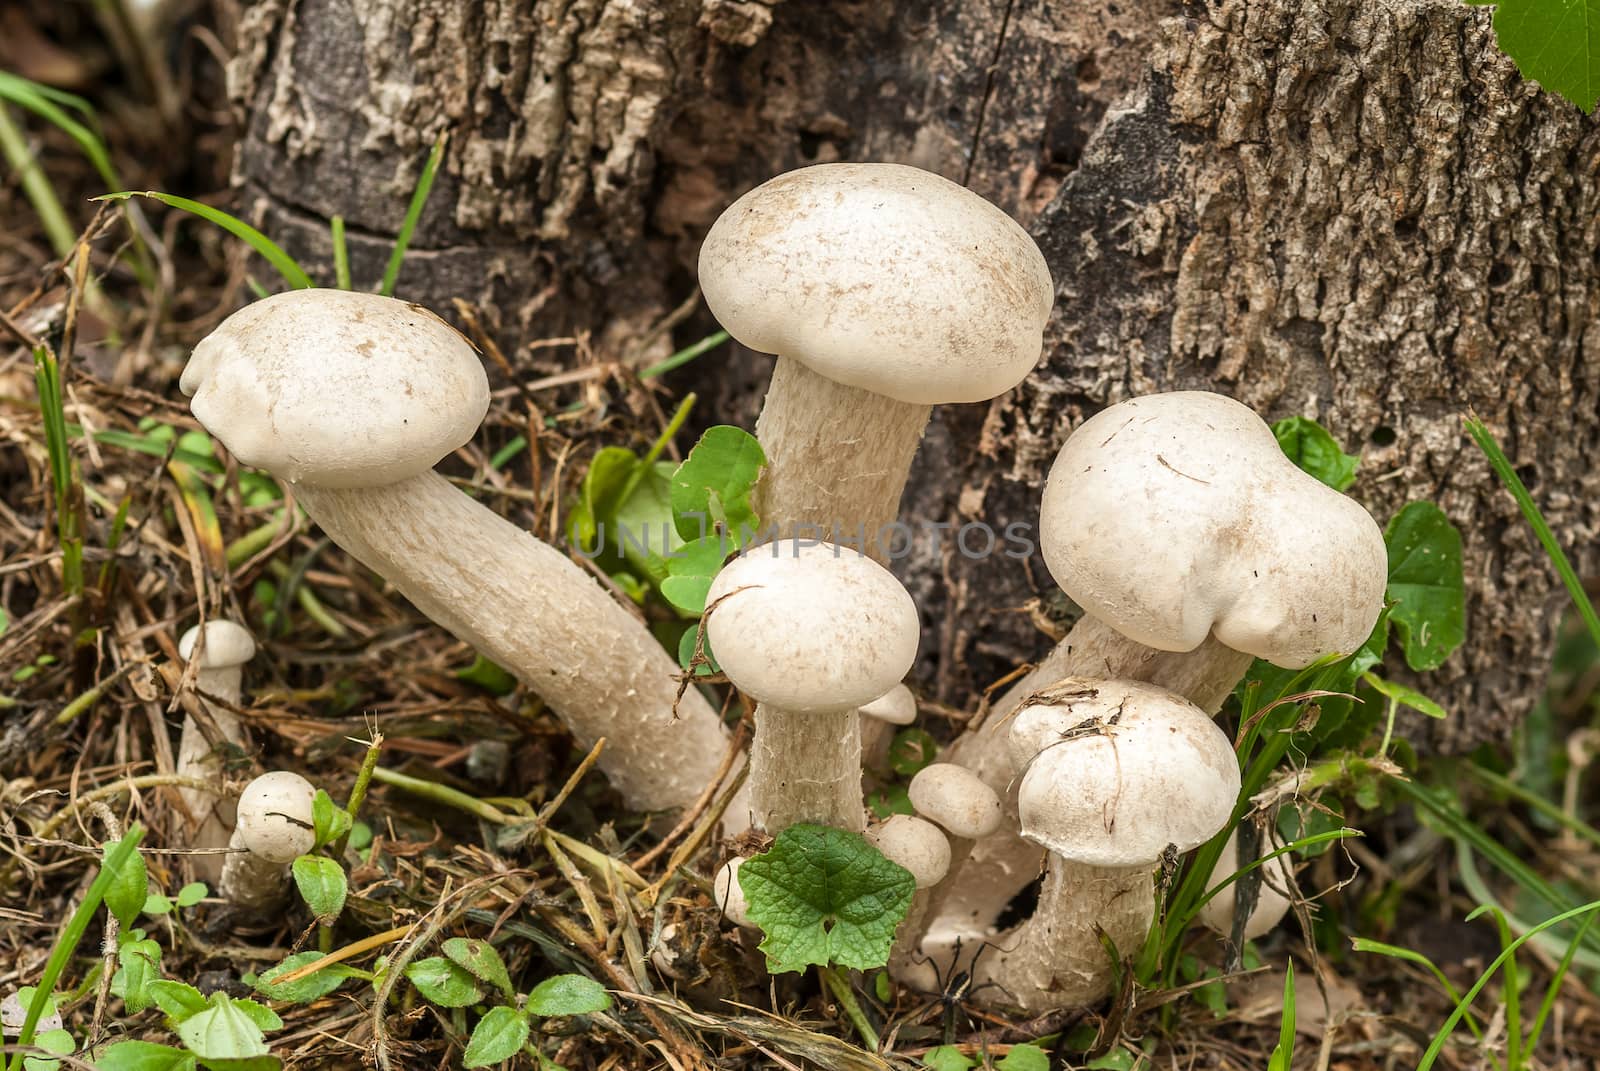 Poisonous mushrooms unusual